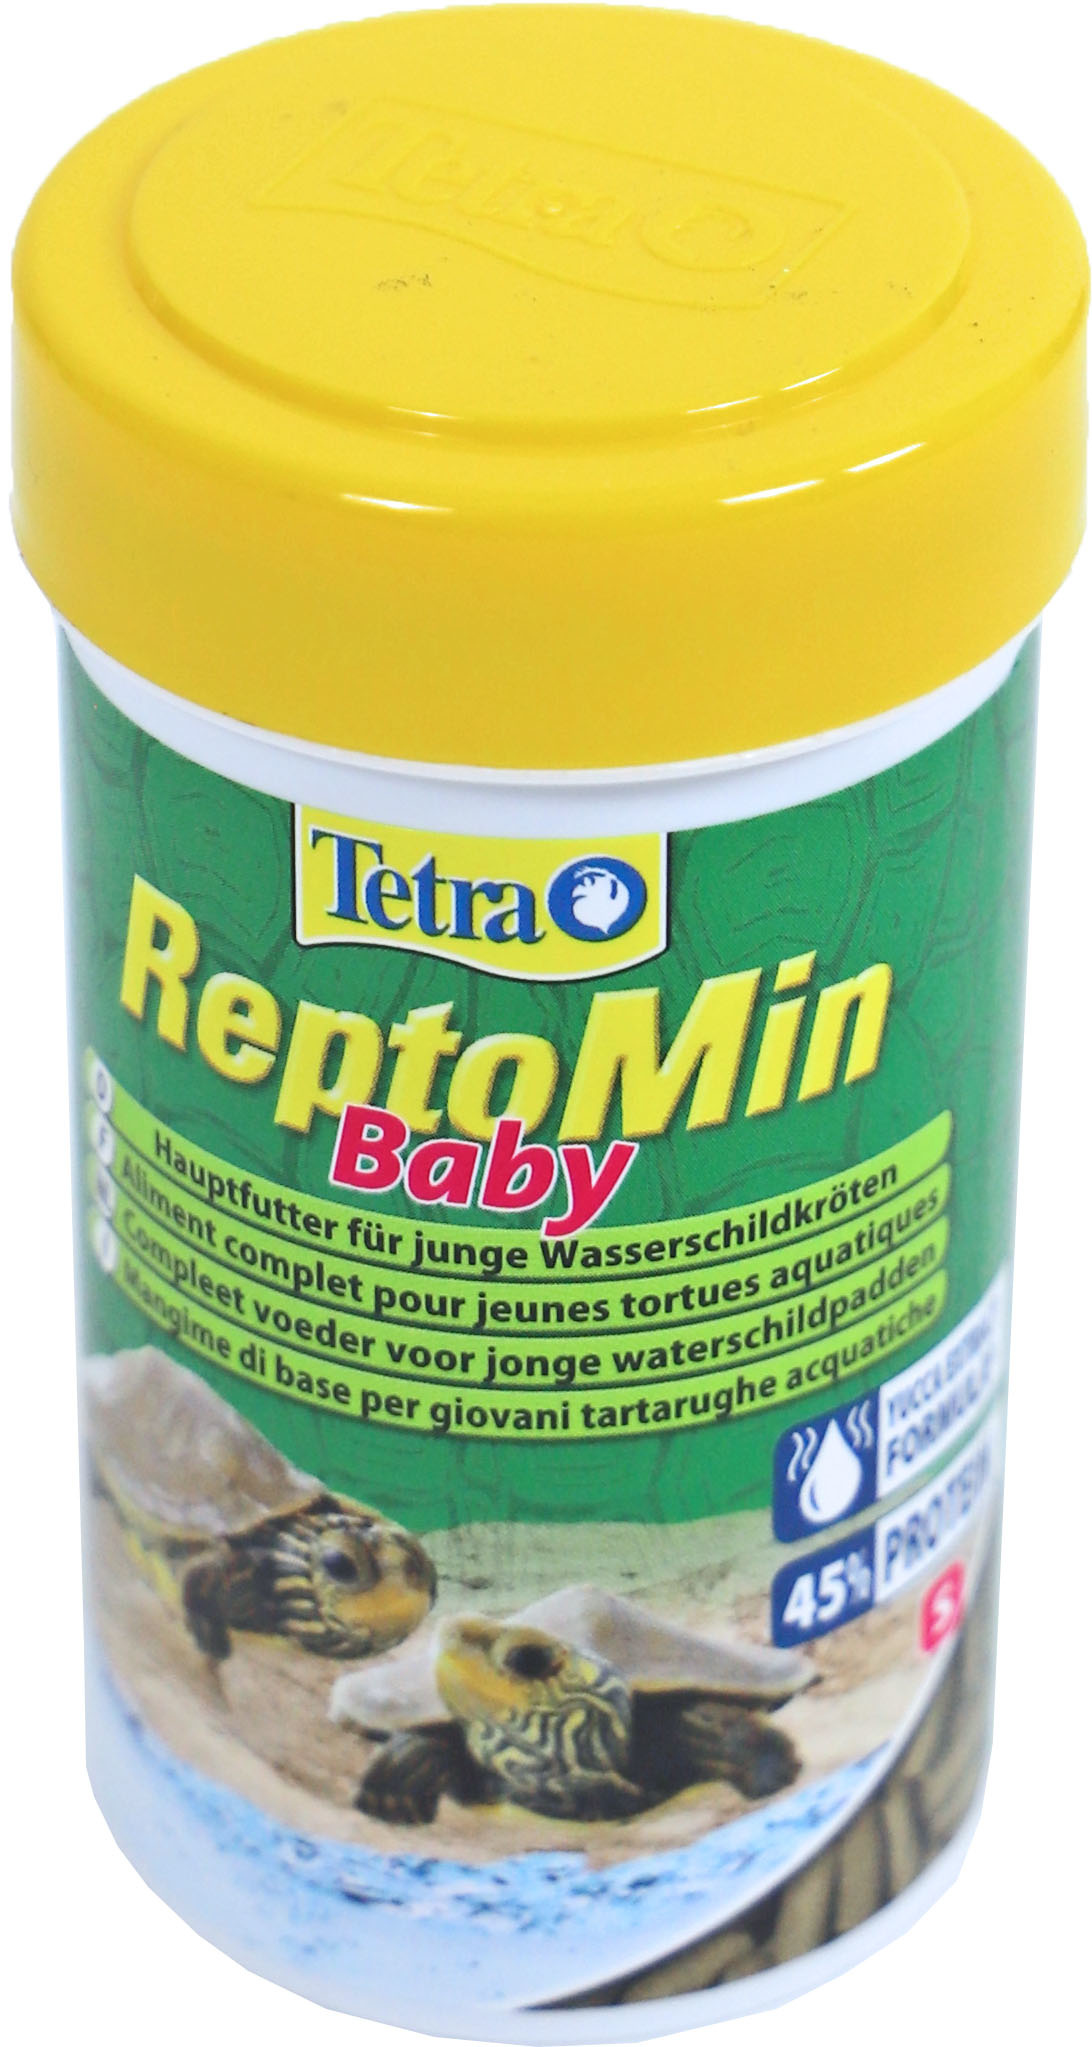 Tetra ReptoMin Baby: Tetra